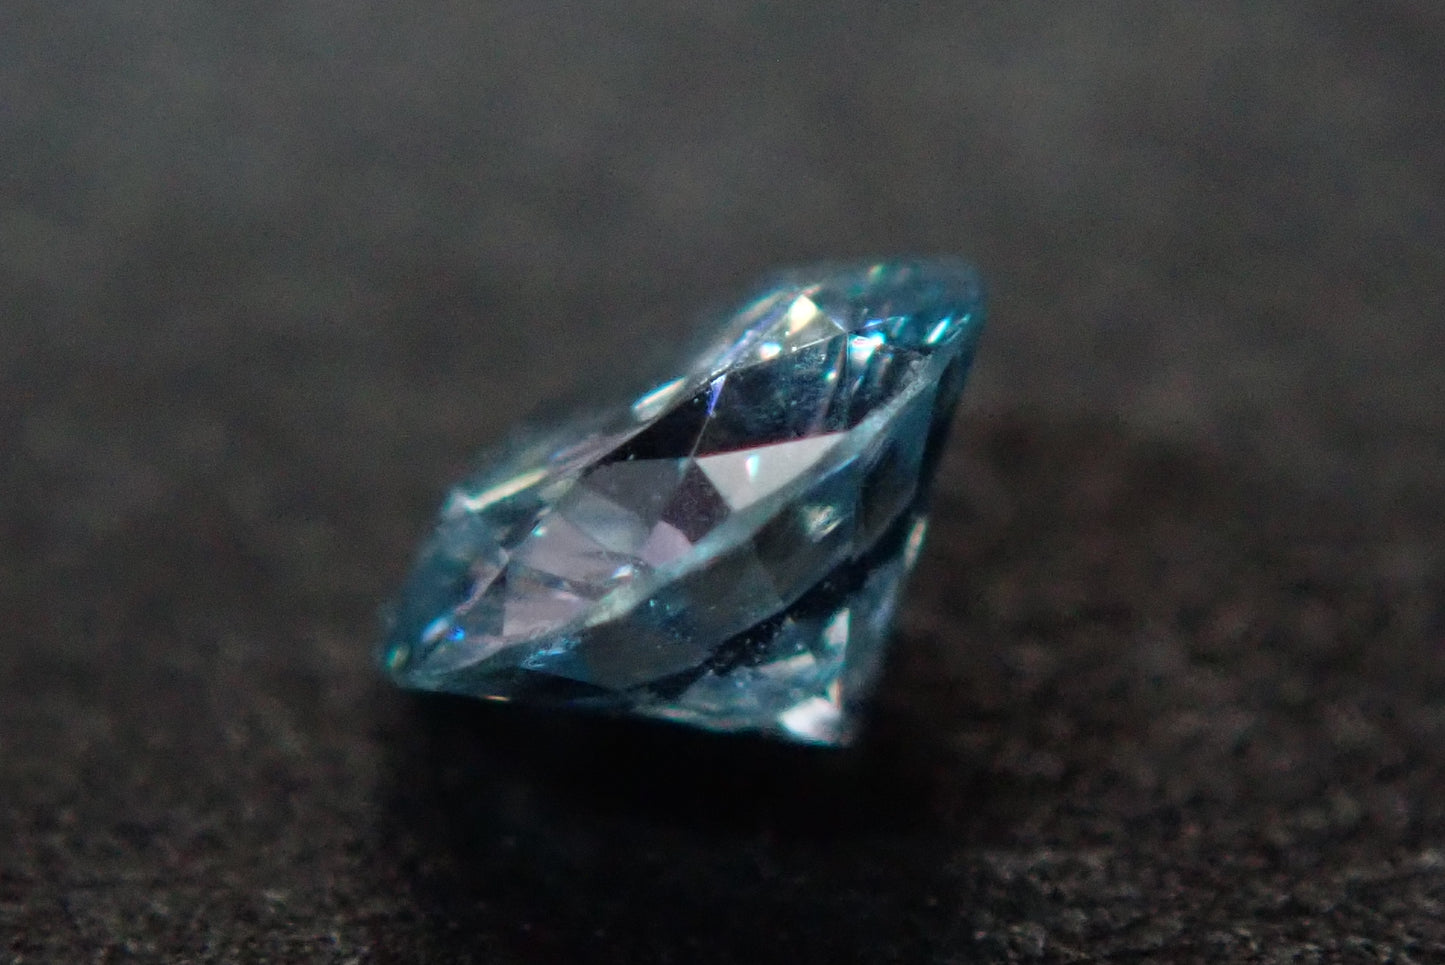 ブルーダイヤモンド 0.087ct